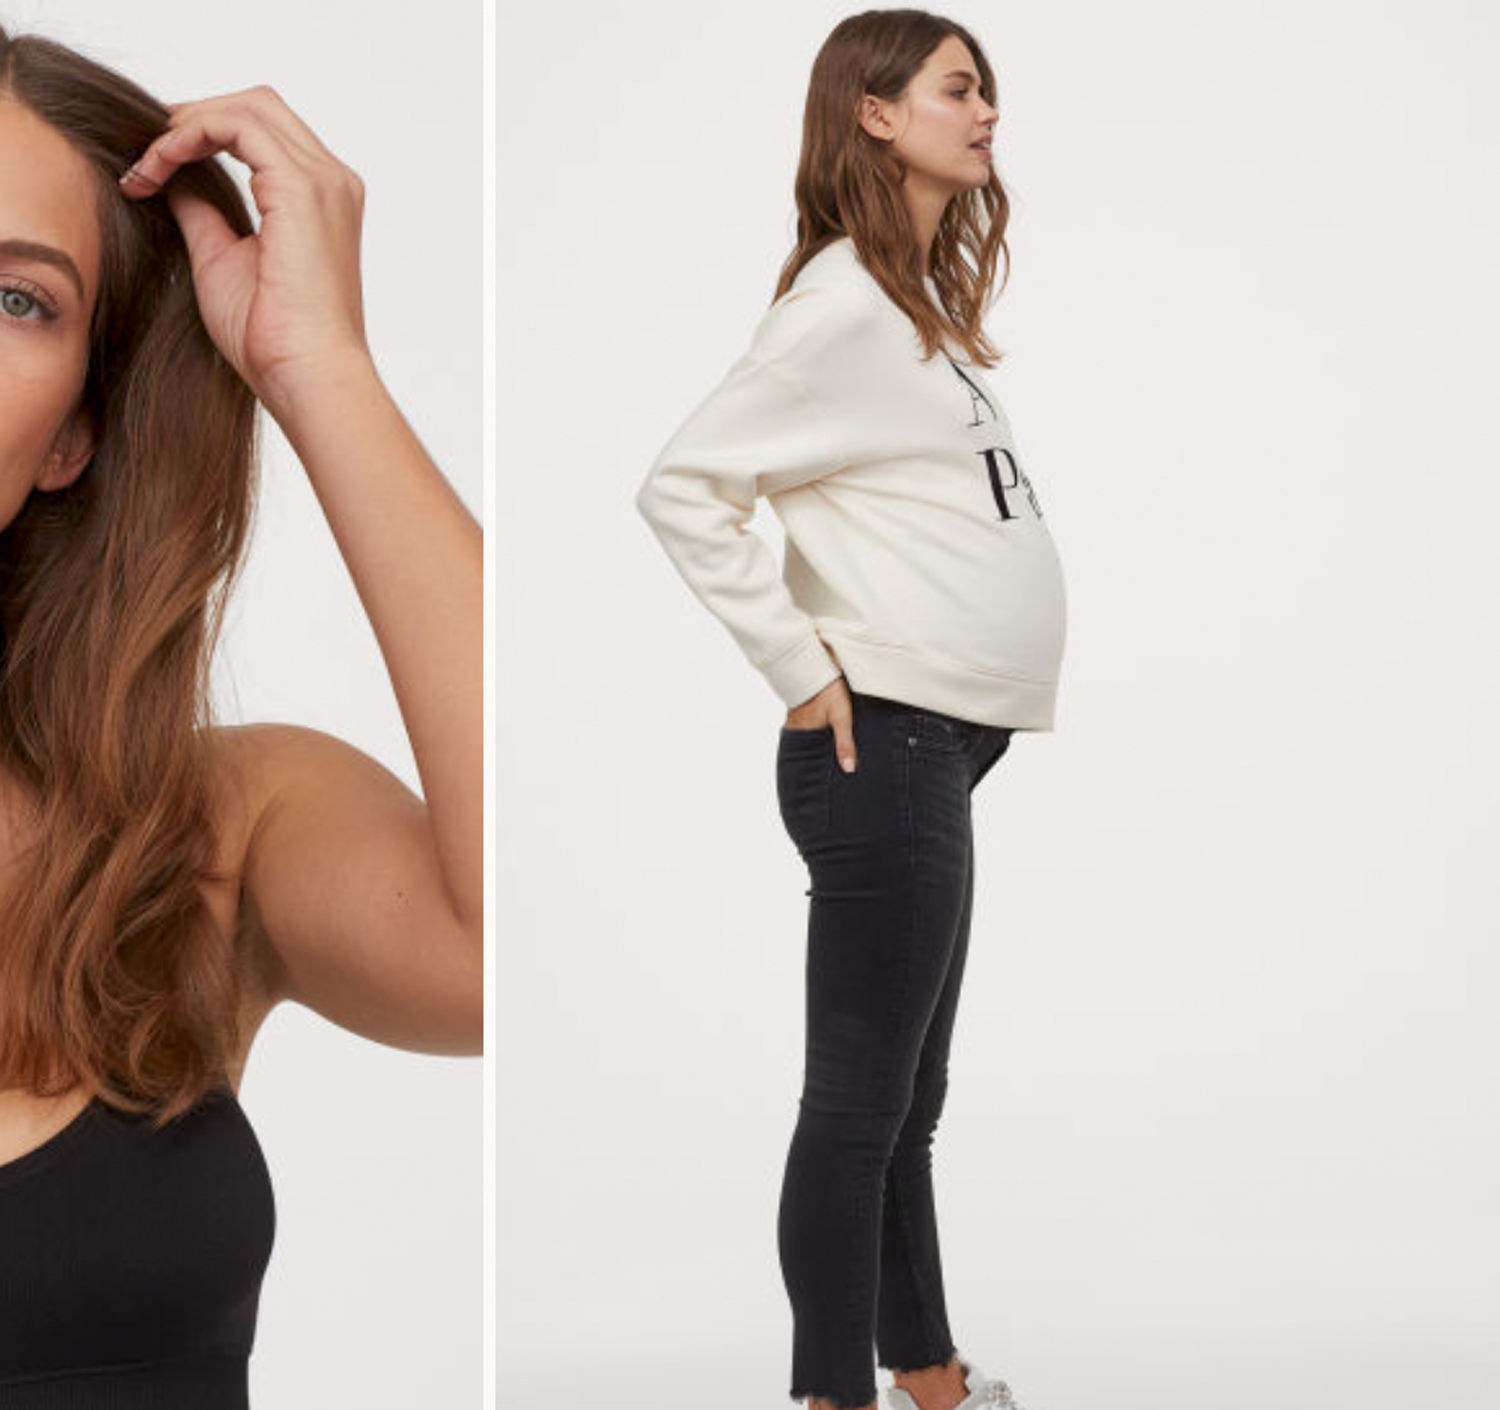 Vêtements de grossesse : à quoi ressemble le dressing d'une femme enceinte  ? - Projet de naissance